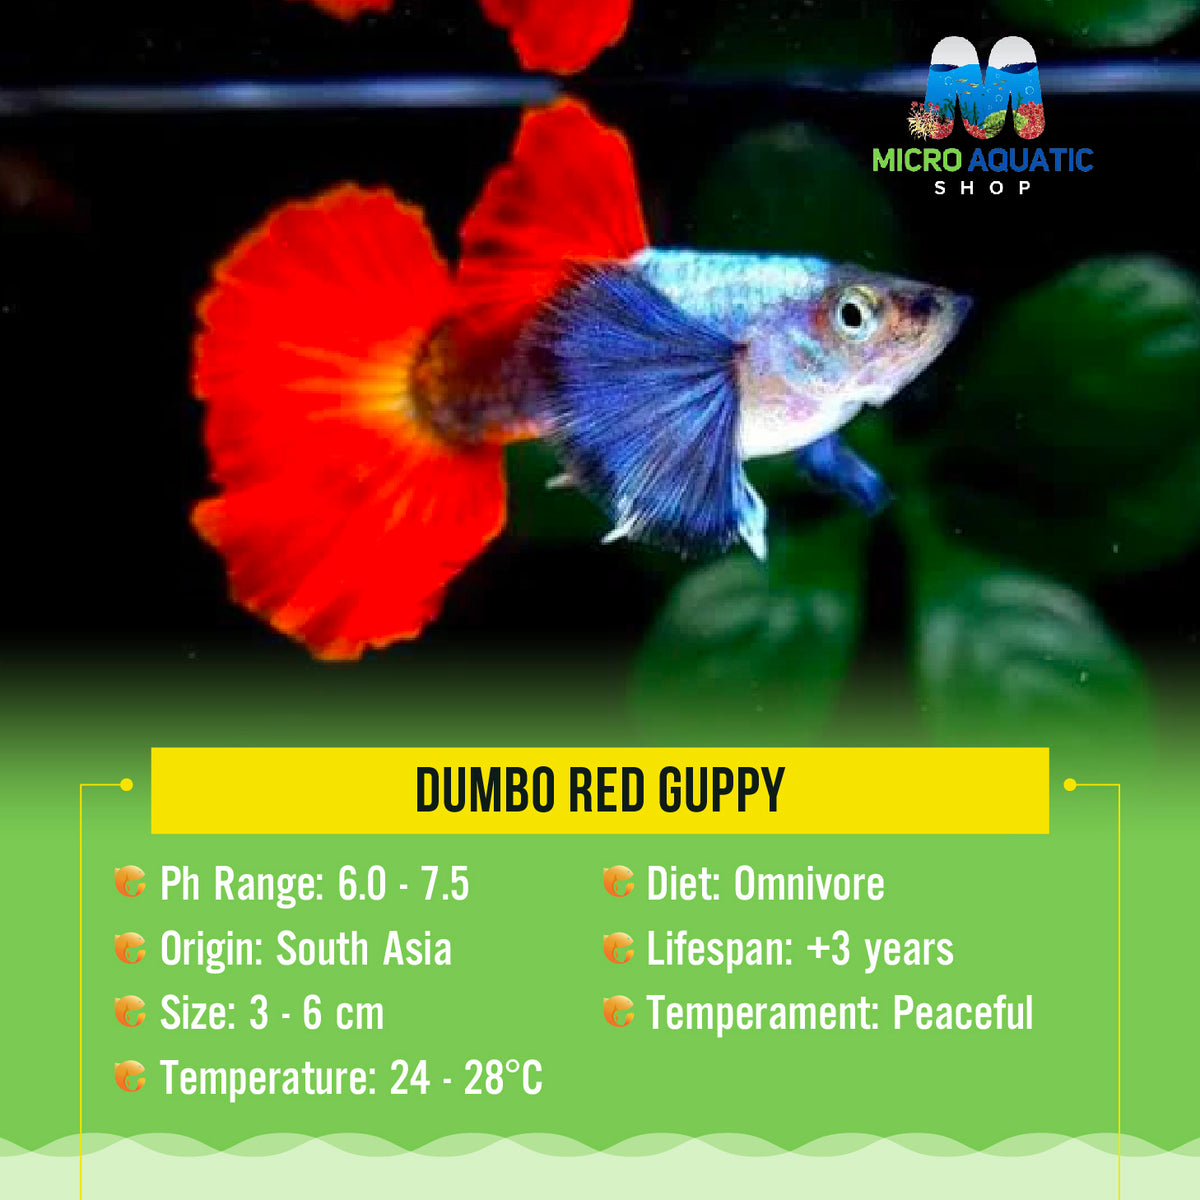 Dumbo Red Guppy